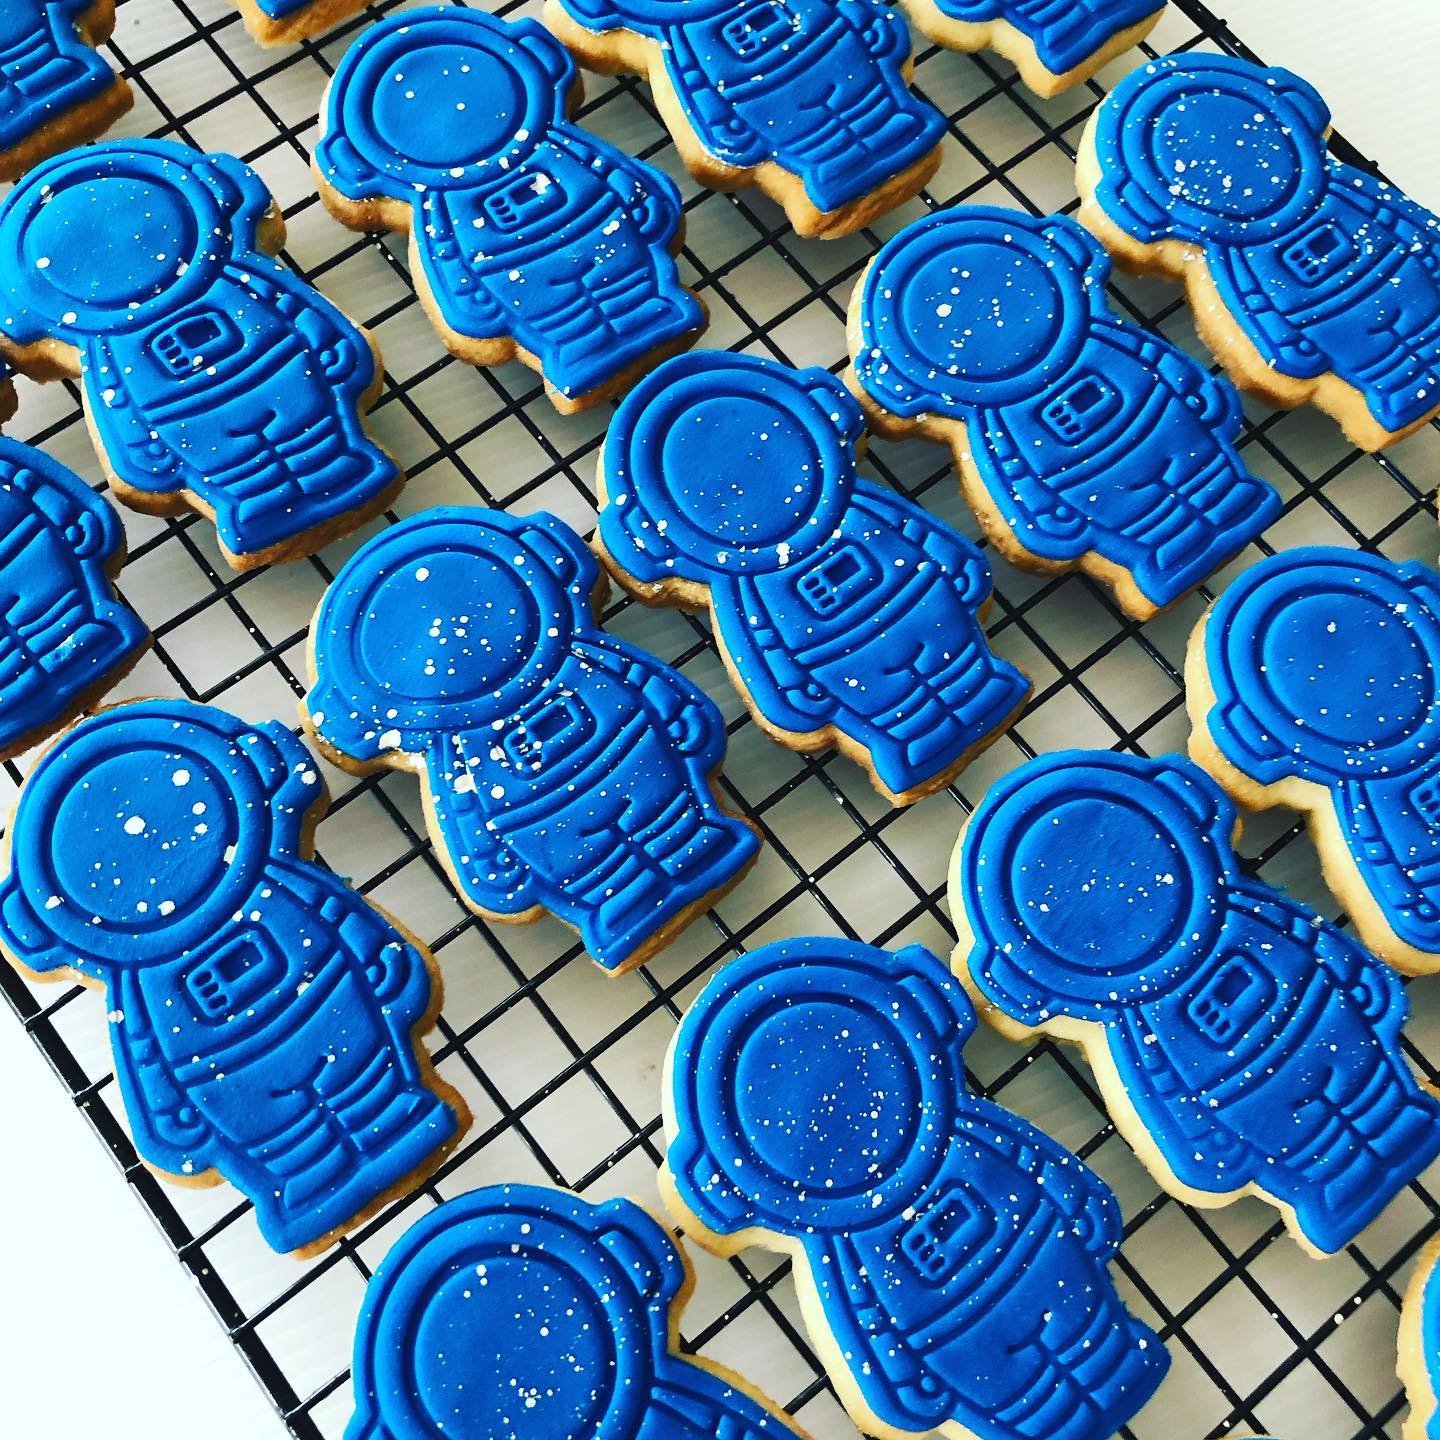 Astronaut Sugar Cookies.jpg